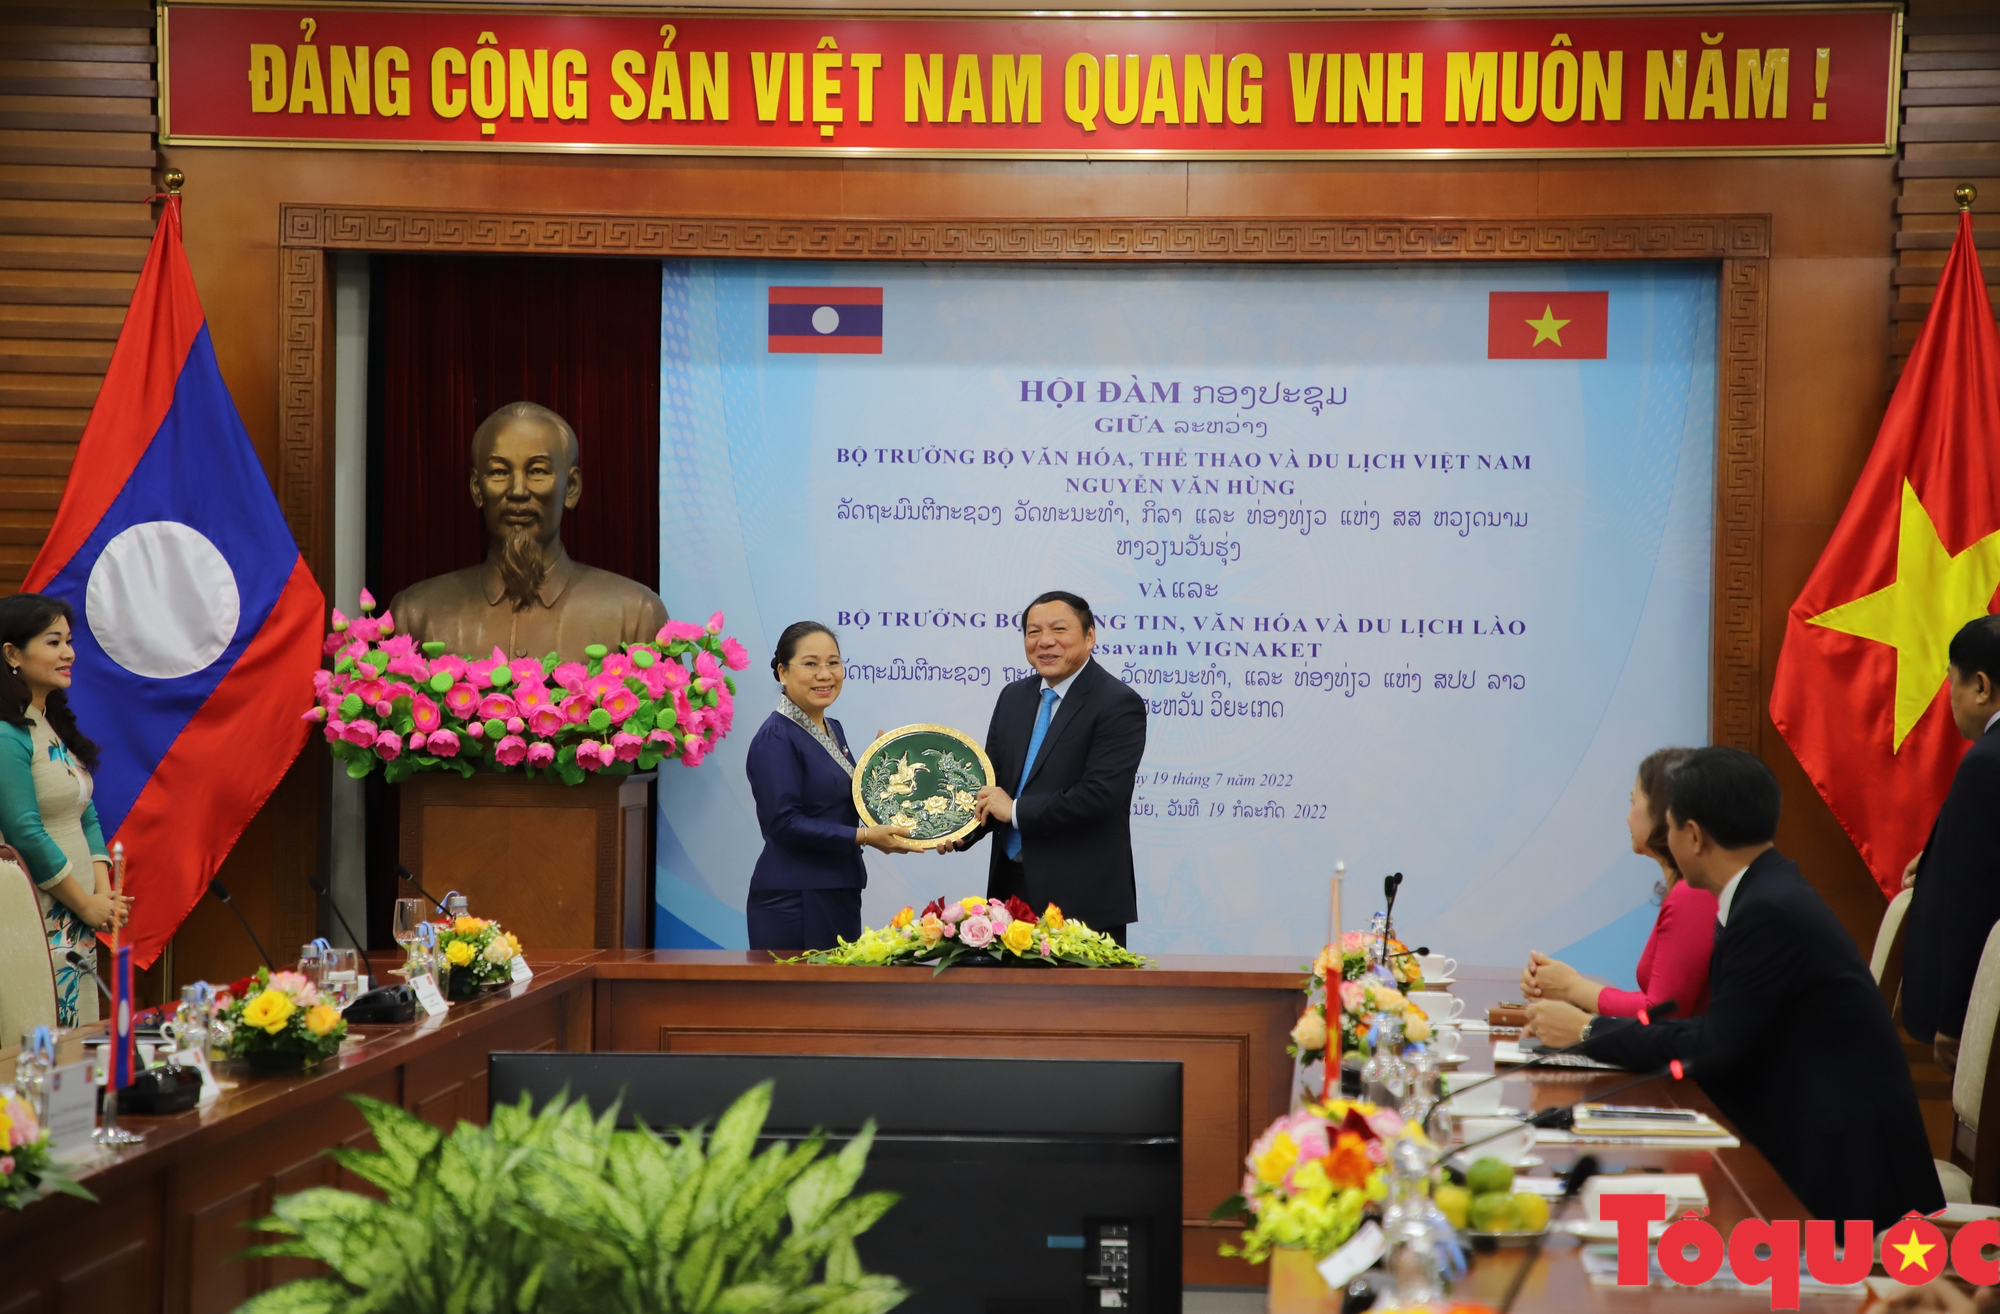 Bộ trưởng Nguyễn Văn Hùng hội đàm với Bộ trưởng Bộ Thông tin, Văn hóa và Du lịch Lào - Ảnh 4.